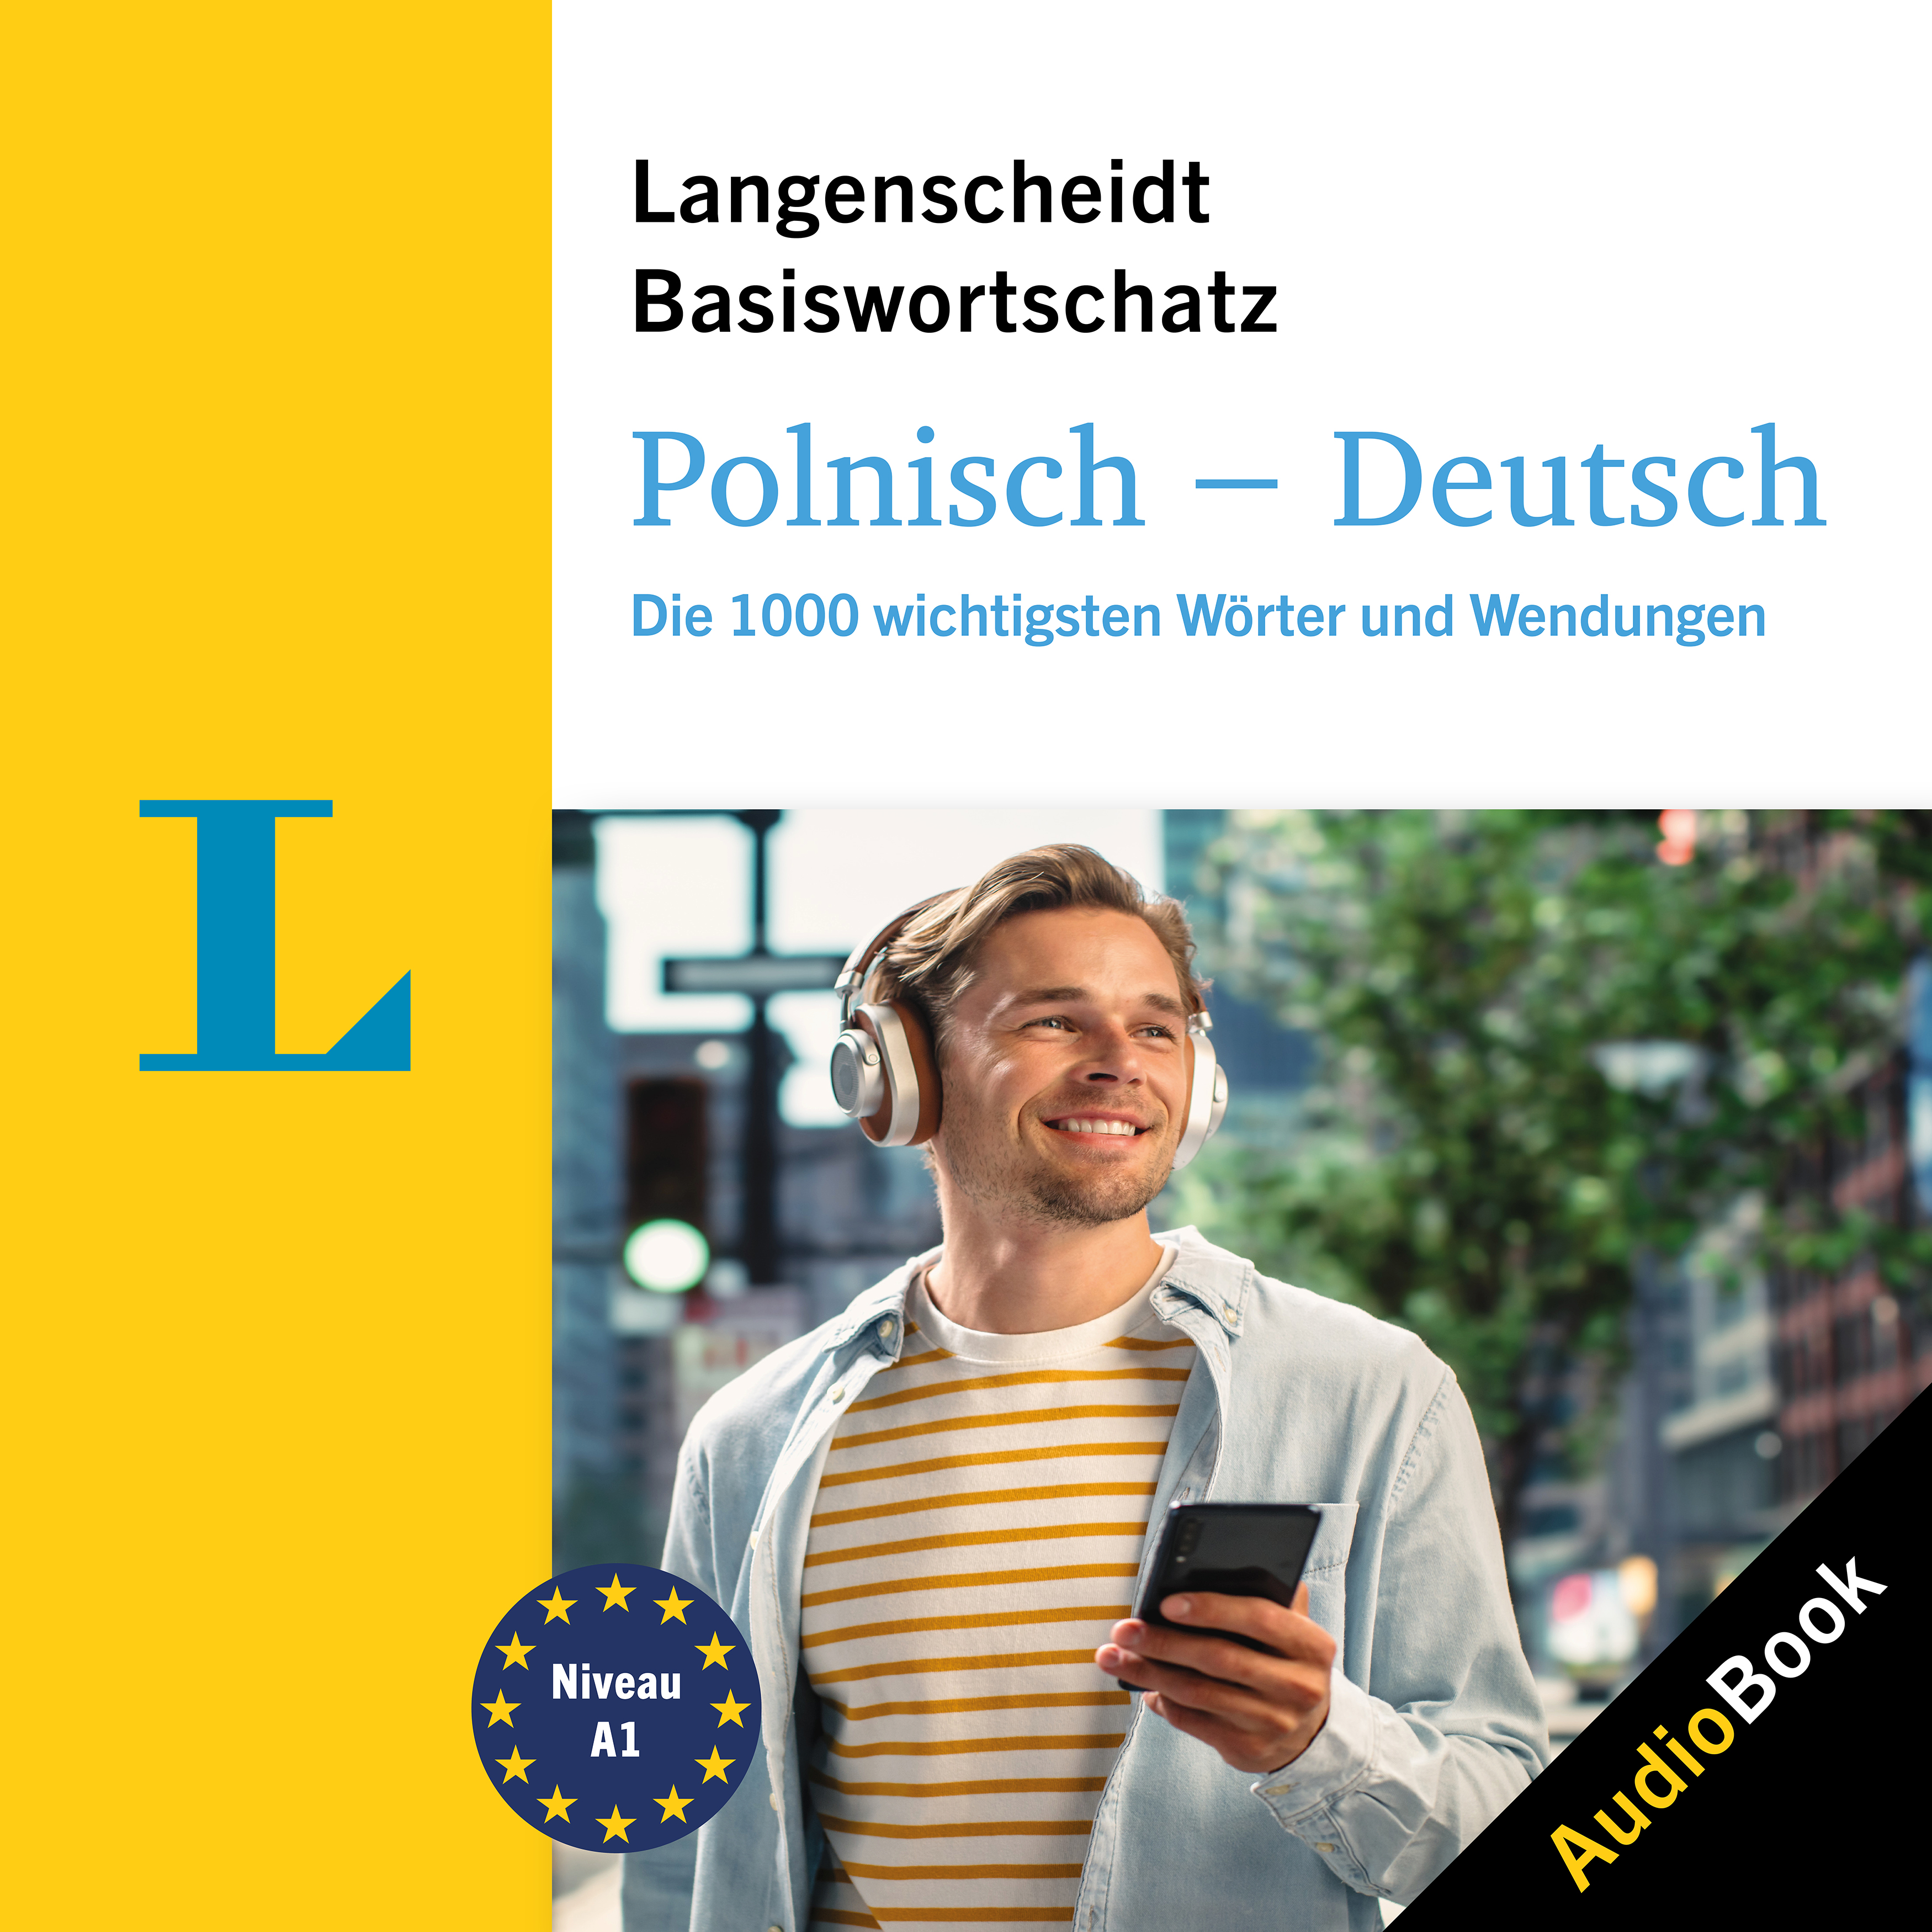 Langenscheidt Polnisch-Deutsch Basiswortschatz